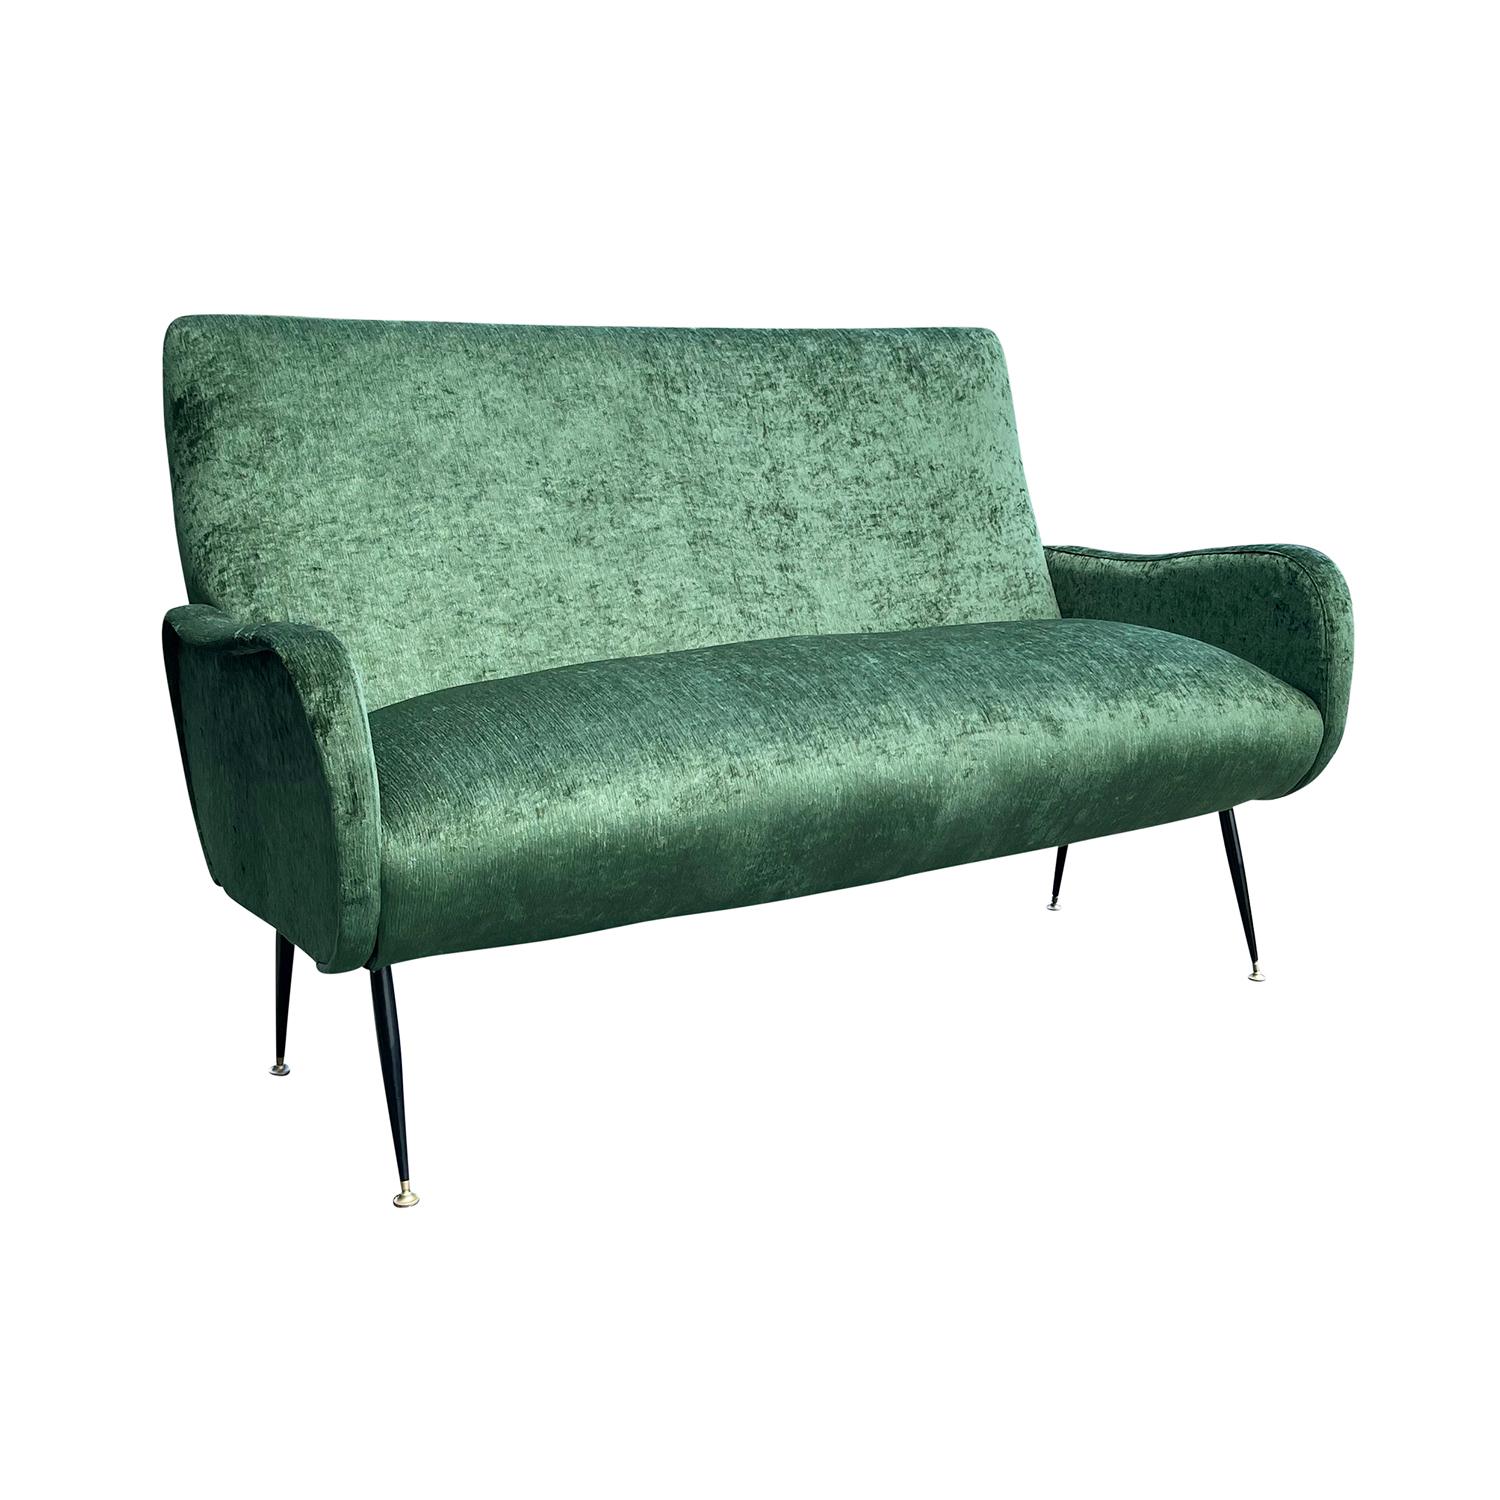 Ein Vintage Mid-Century Modern italienische Zweisitzer Sofa oder Sofa, entworfen von Marco Zanuso in gutem Zustand. Die Rückenlehne des kleinen Diwans ist leicht geschwungen mit schlanken, gewölbten Armlehnen und steht auf vier schwarzen,